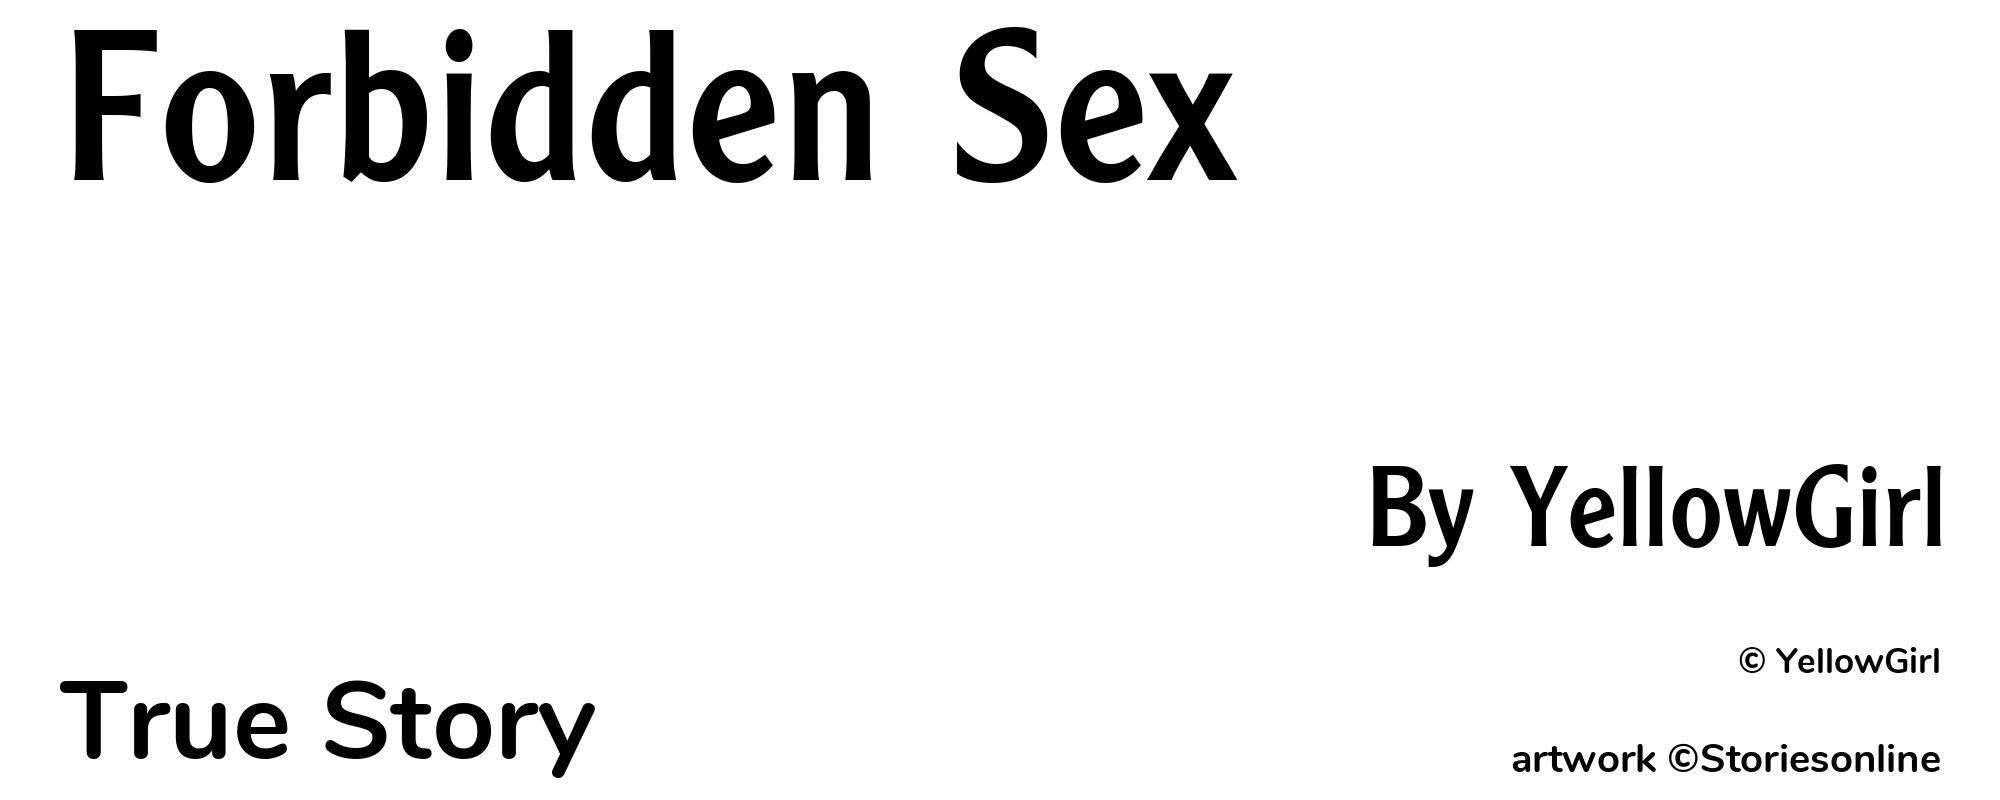 Forbidden Sex - Cover